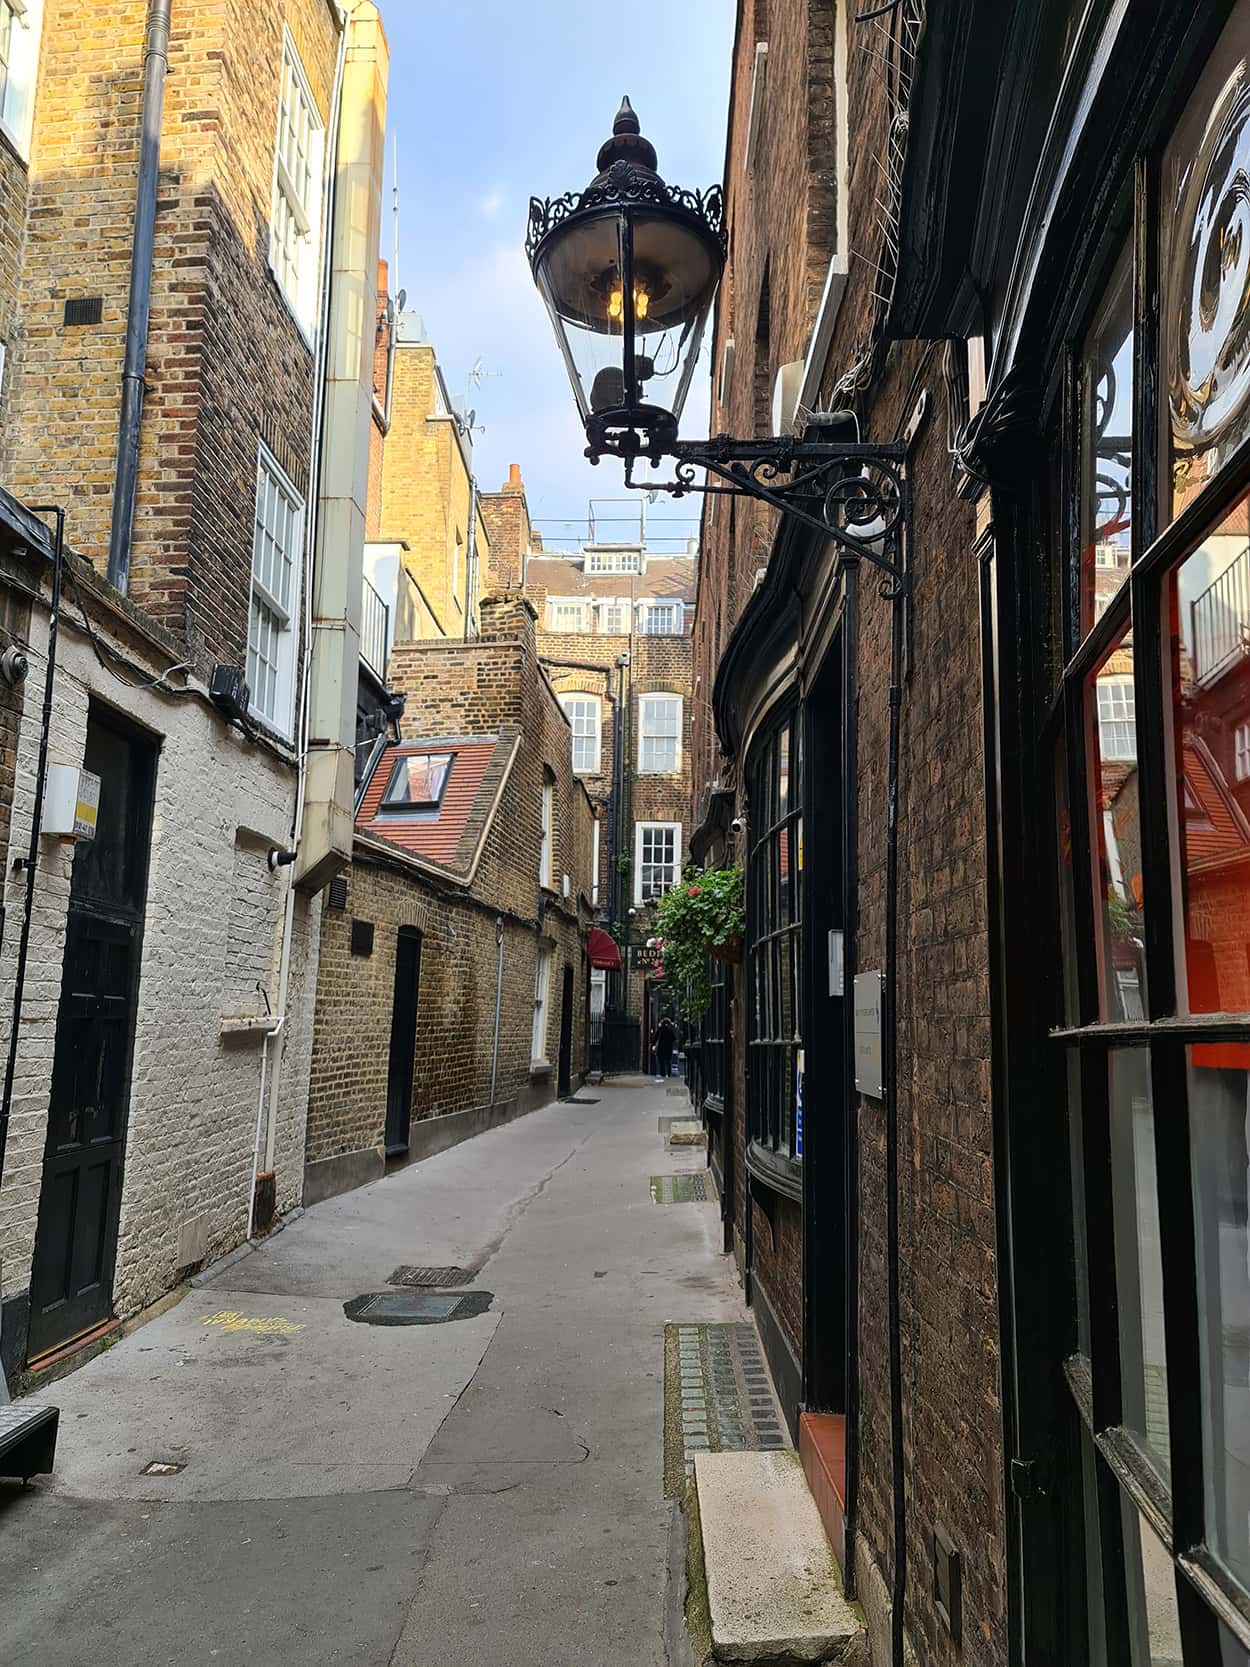 In foto si vede un vicolo, caratterizzato da un lampione nero e alcuni negozi con porte dipinte di nero, che è stato d'ispirazione per la Rowling per creare Nocturne Alley, uno dei luoghi di Harry Potter a Londra